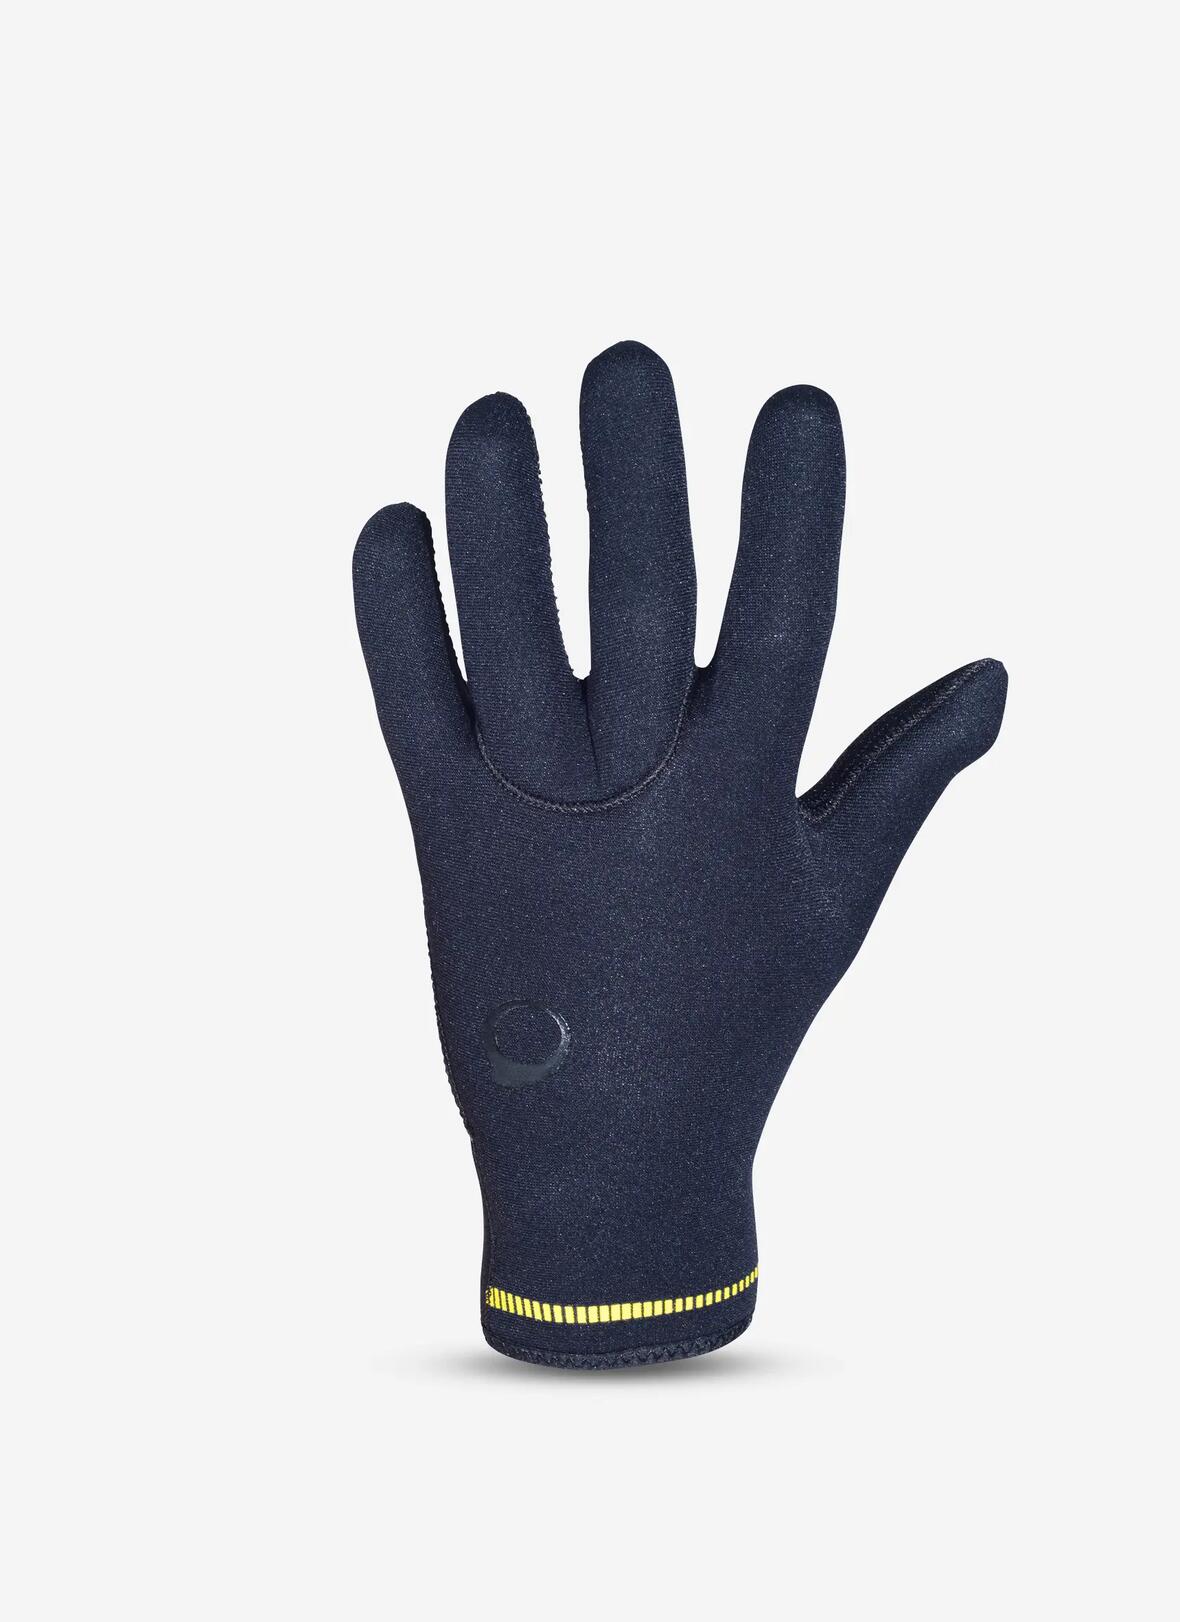 diving gloves scd 100 3mm